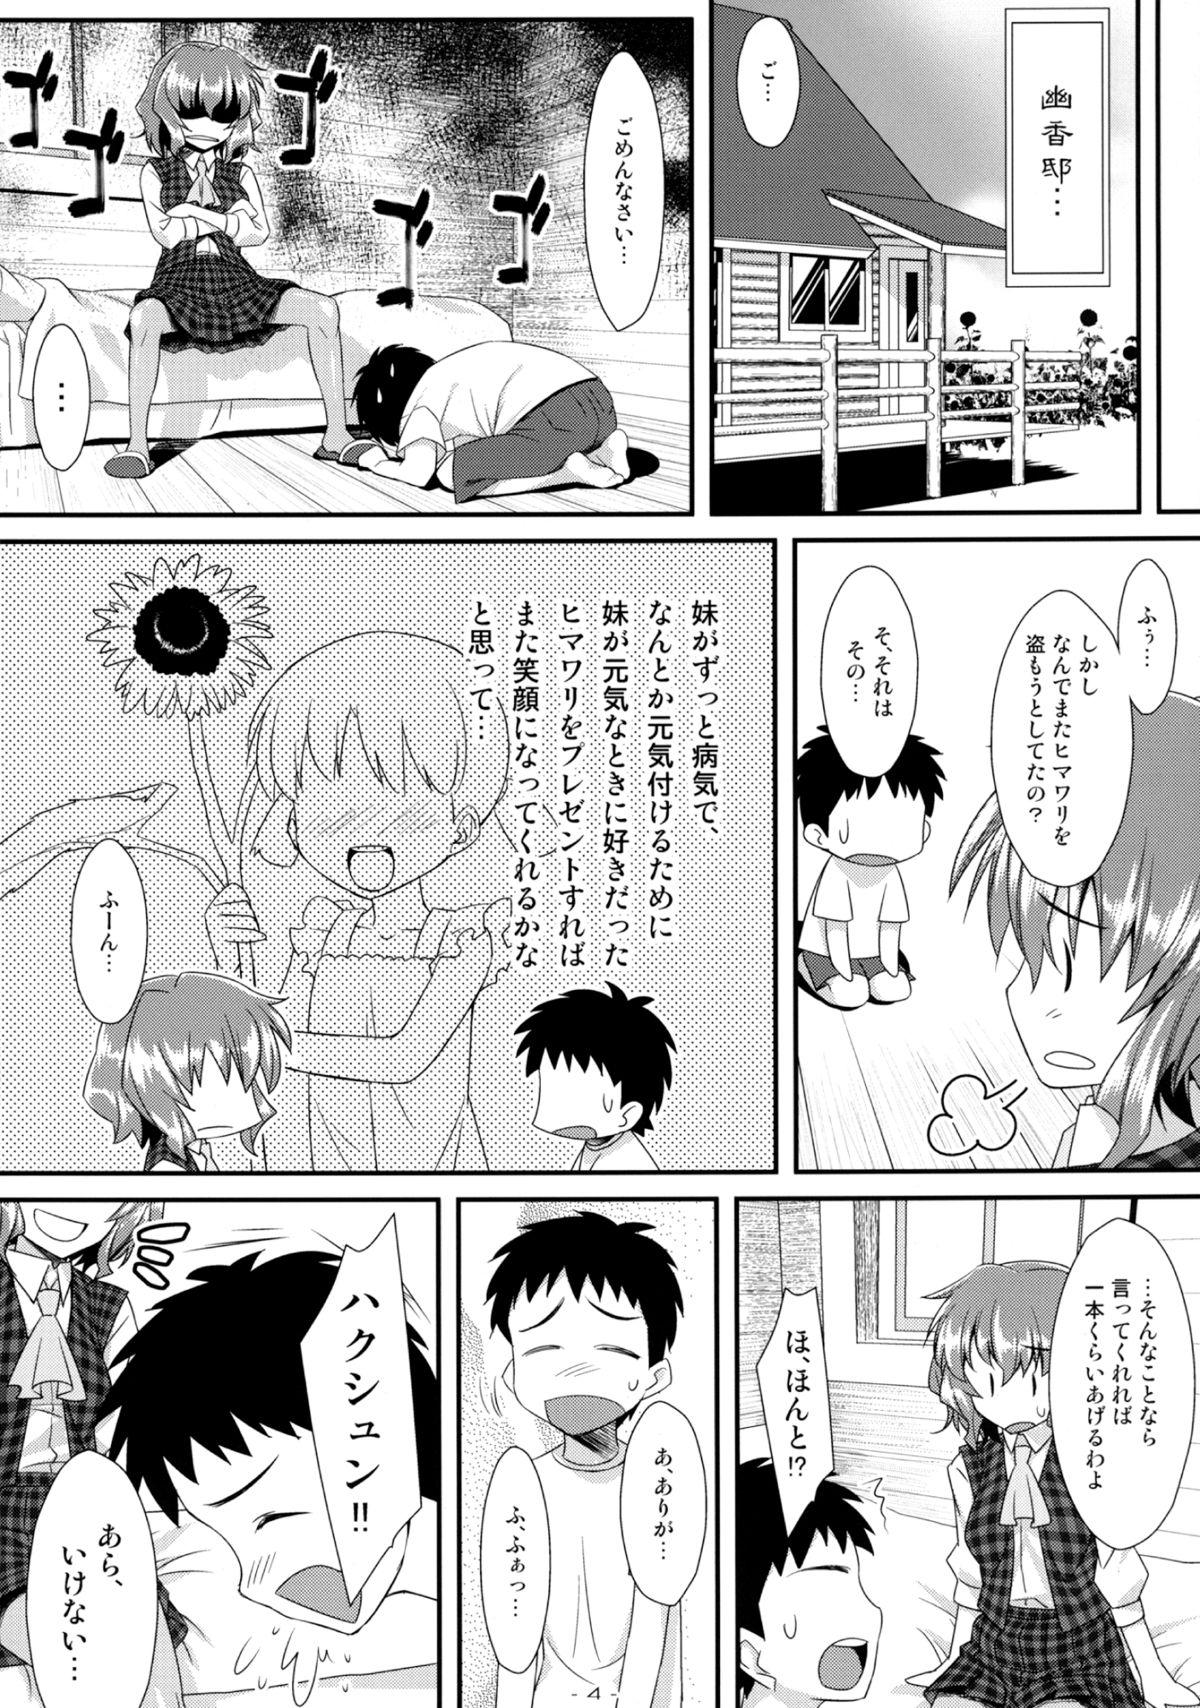 Swinger Yasei no Chijo ga Arawareta! 5 - Touhou project Lesbians - Page 4